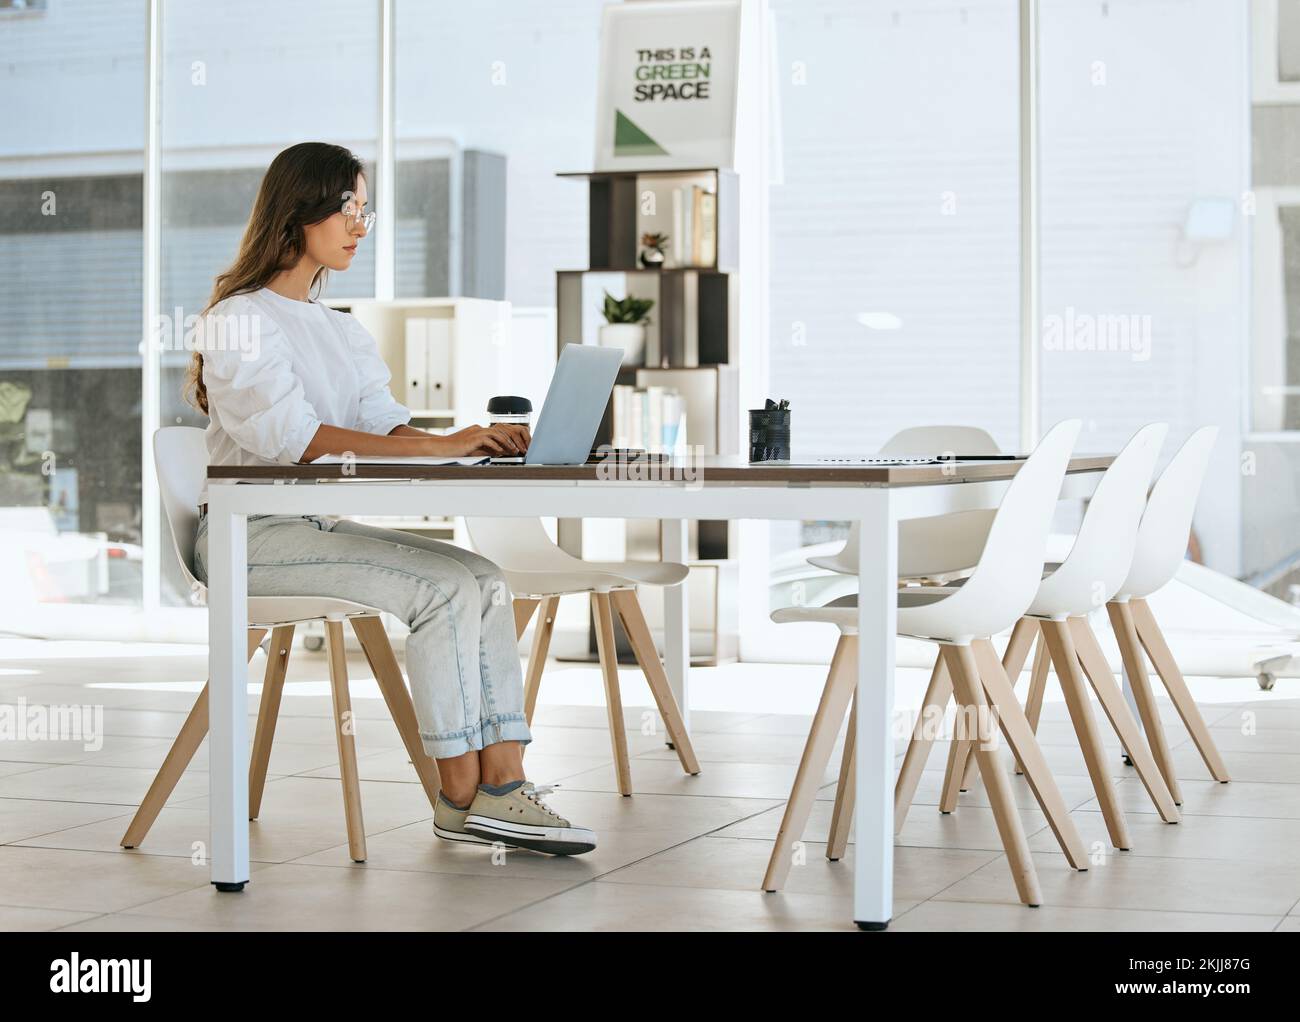 Büro, Laptop und Geschäftsfrau am Schreibtisch, die online arbeitet, das Internet nutzt und Marketingrecherchen durchführt. Technologie, Webdesign und Mädchen am Schreibtisch Stockfoto